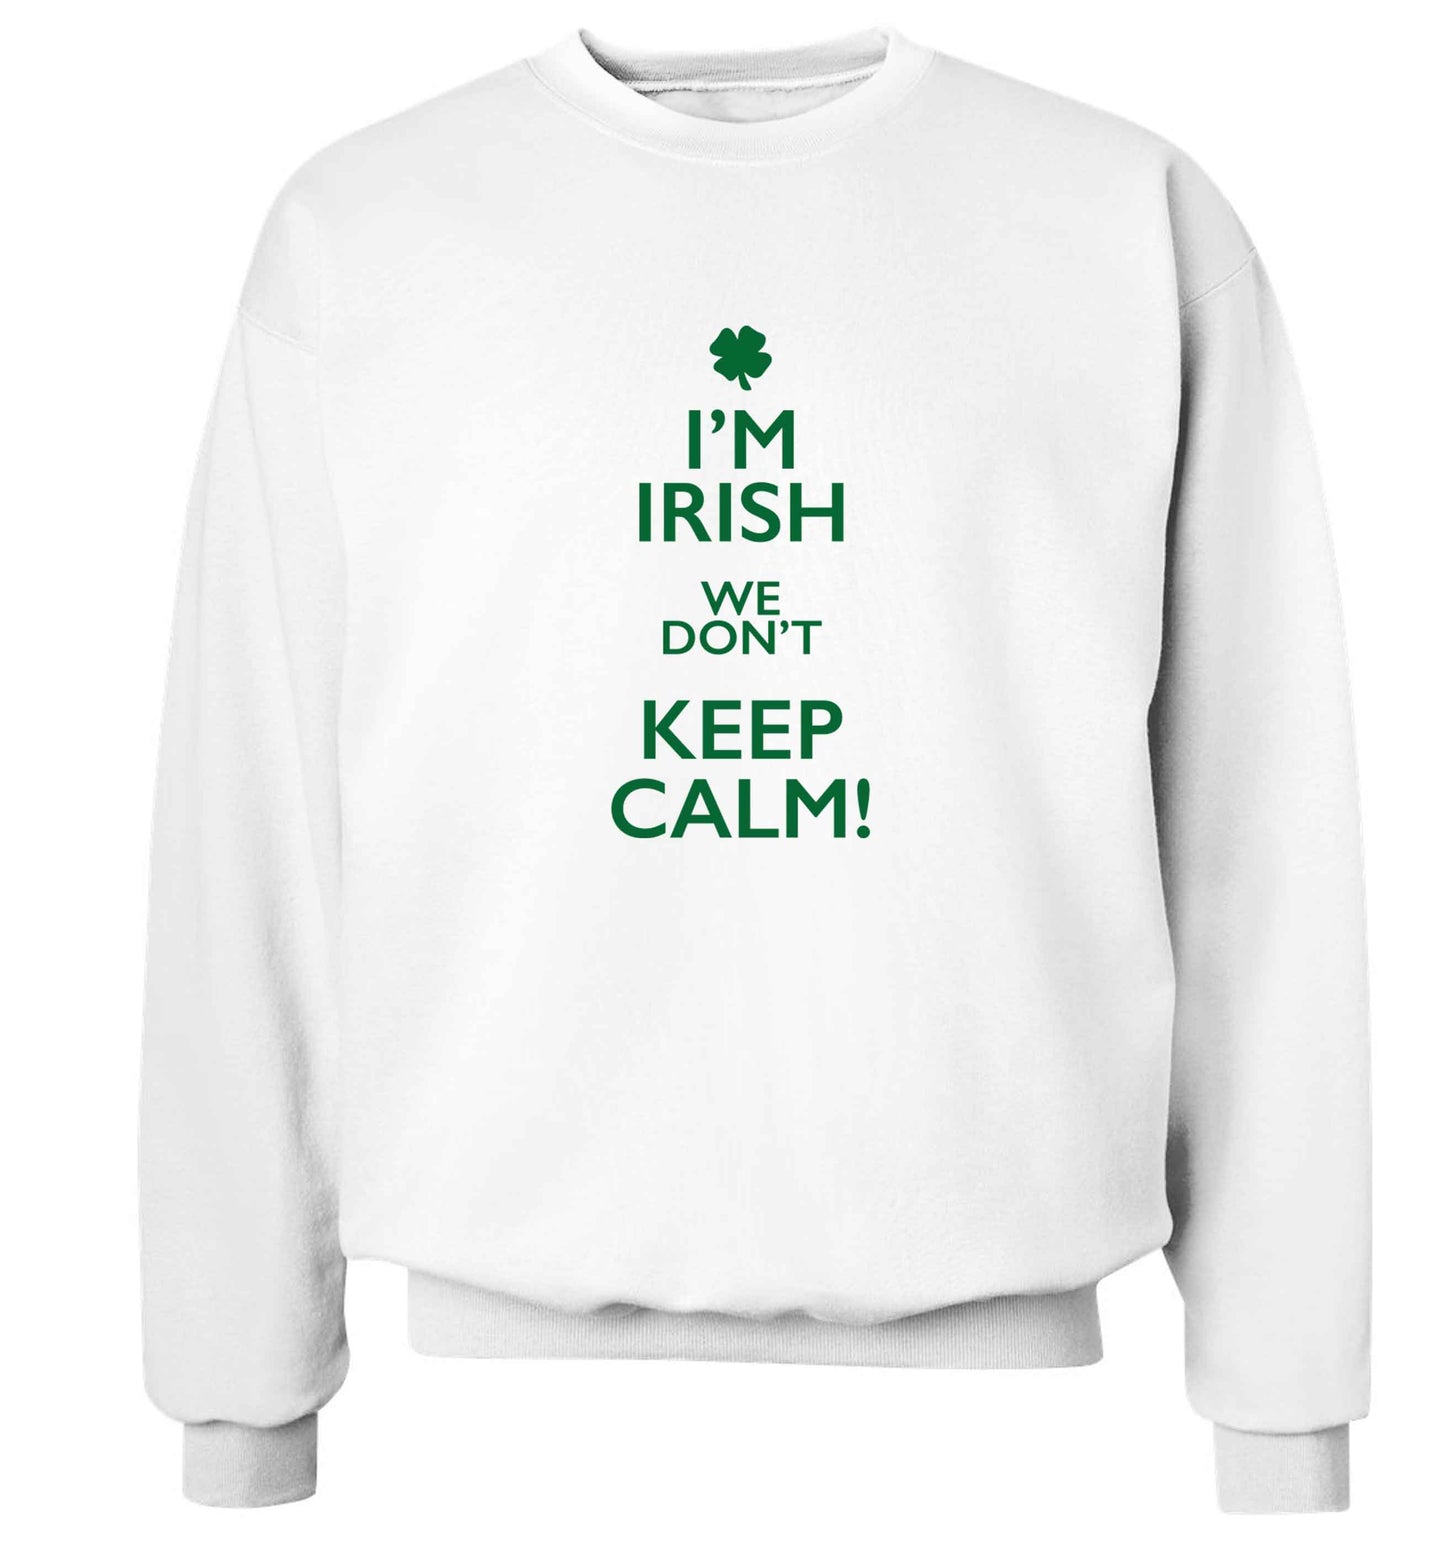 I'm Irish we don't keep calm adult's unisex white sweater 2XL